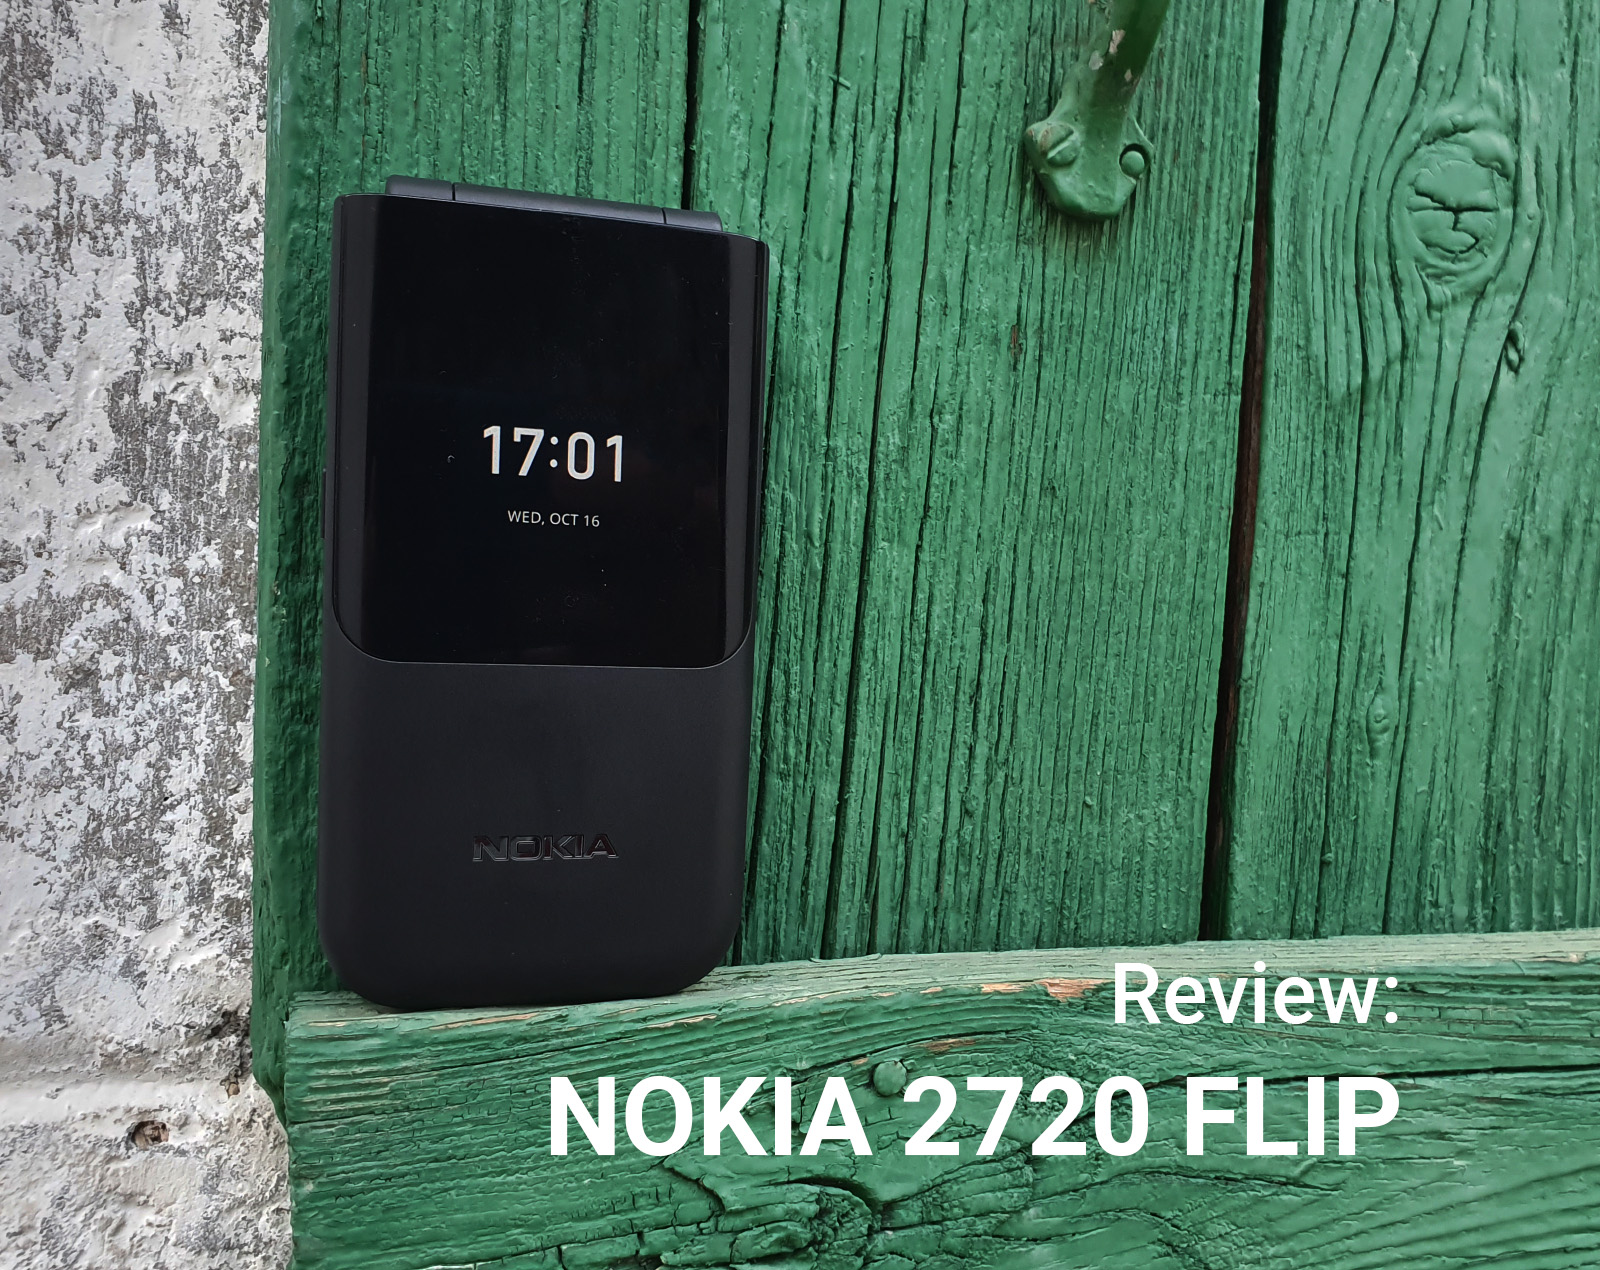 Review: Nokia 2720 Flip